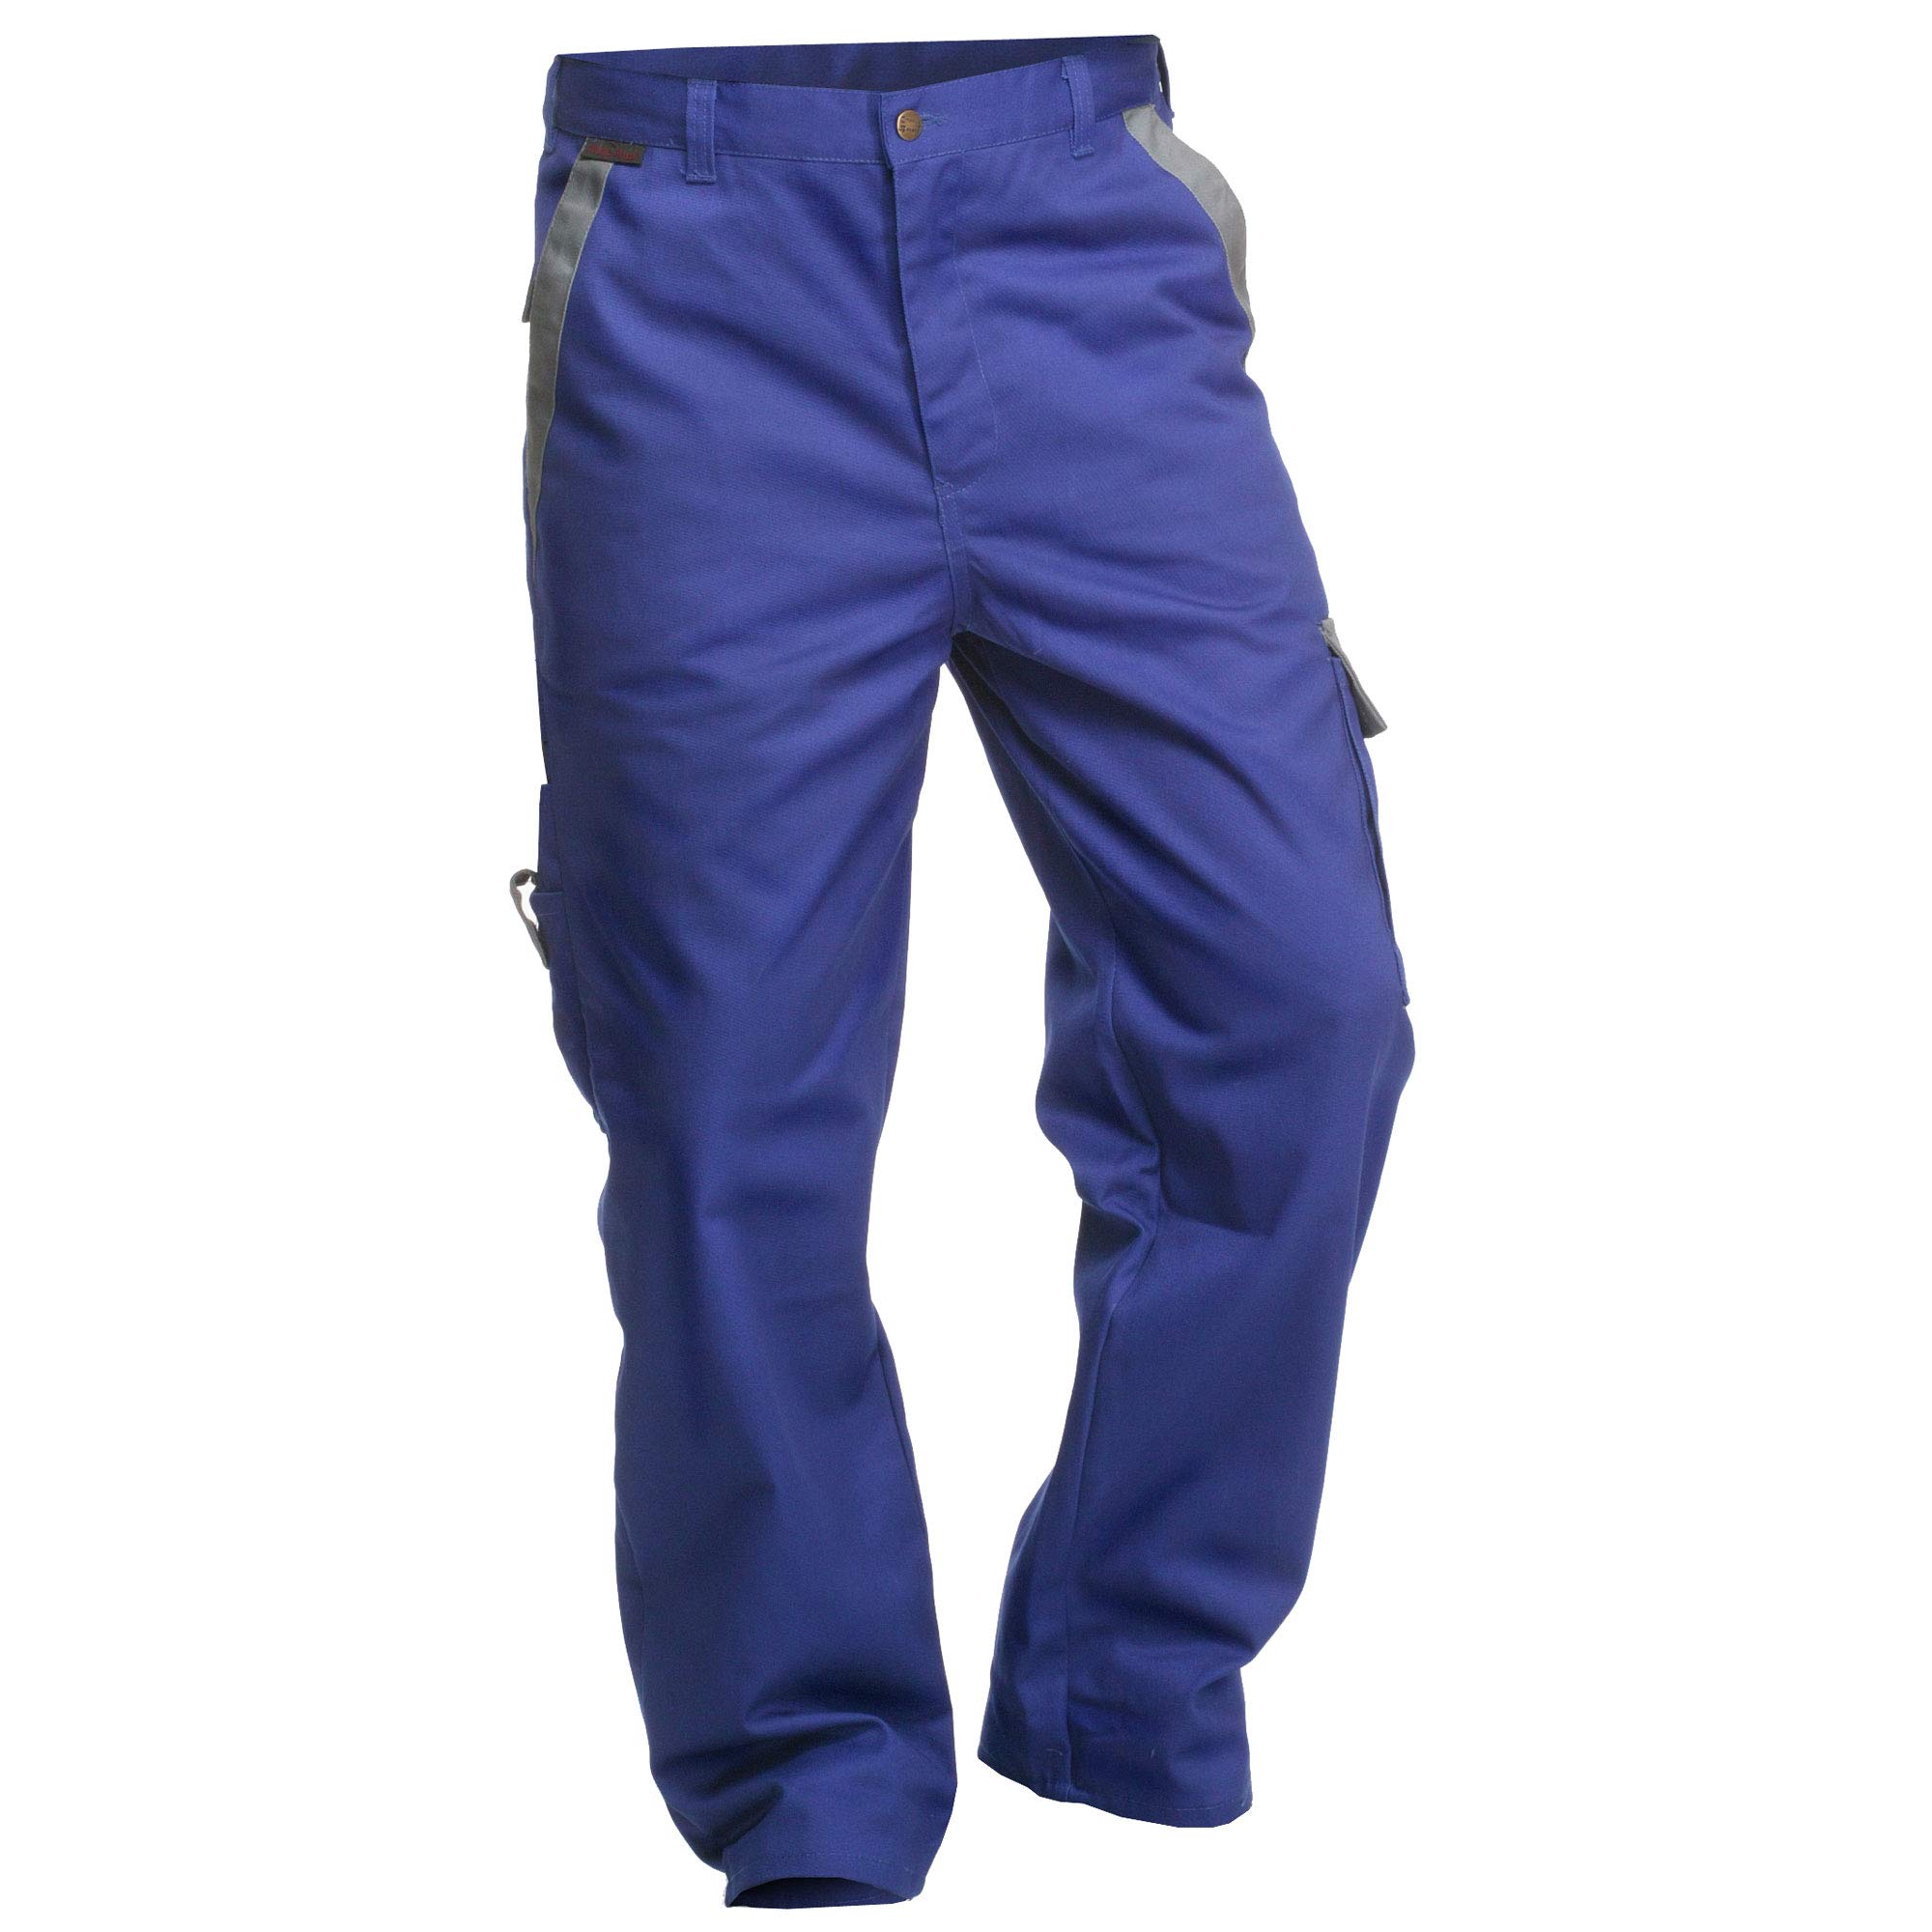 Arbeitshose Charlie Barato Profi Line kornblau/grau - Bundhose für Handwerker Größe 56